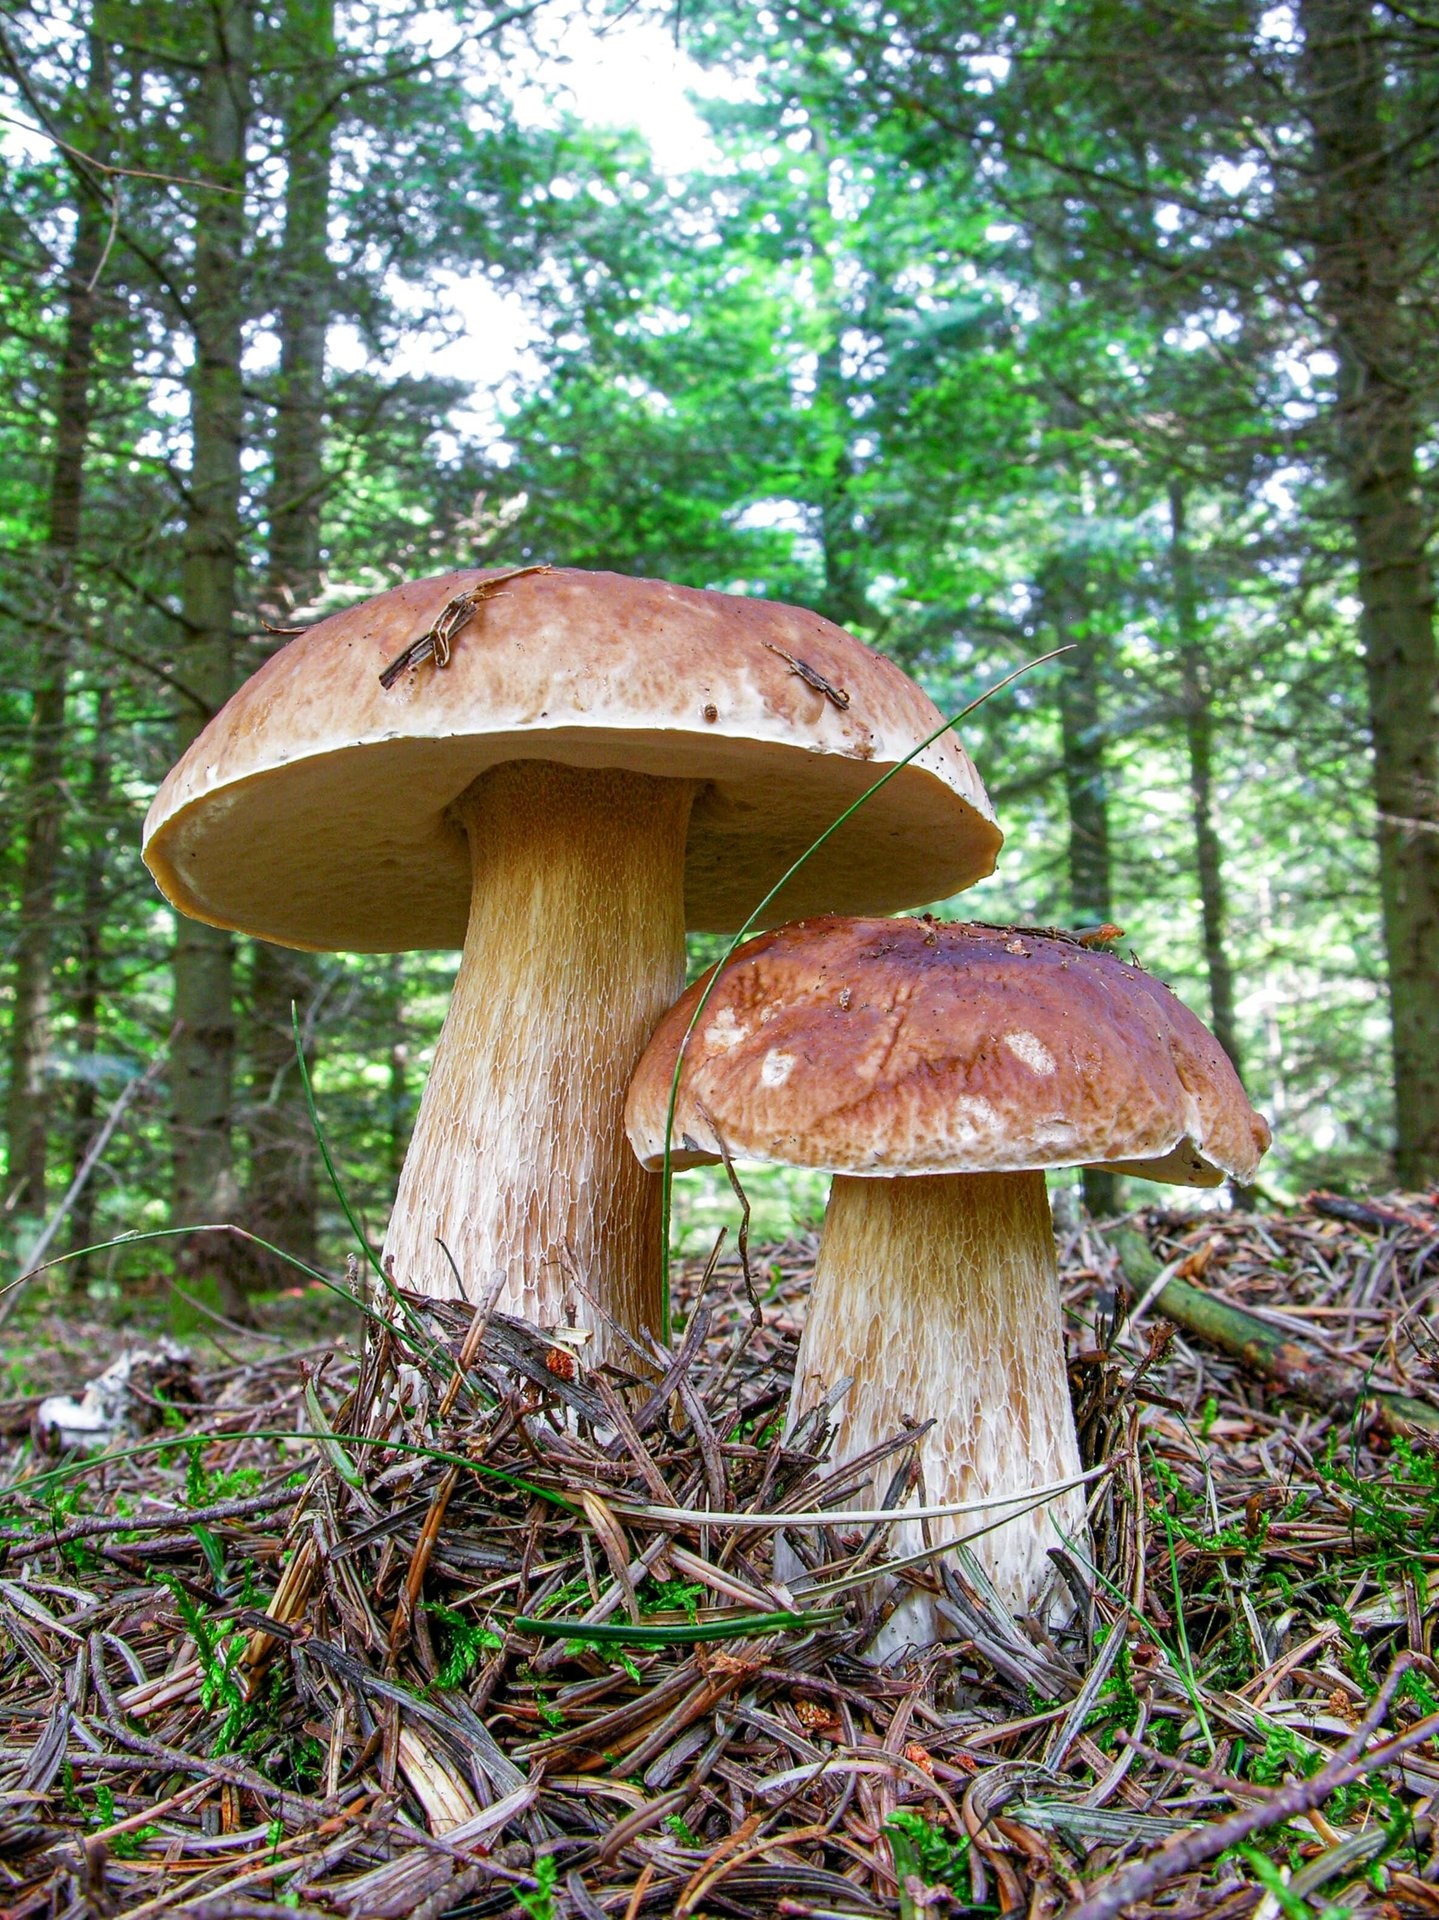 Karl Johan er en af de mest populær spiselige svampe. Svampen kan kendes på sin buttede hvidlige stok og brune halvkugleformede hat.